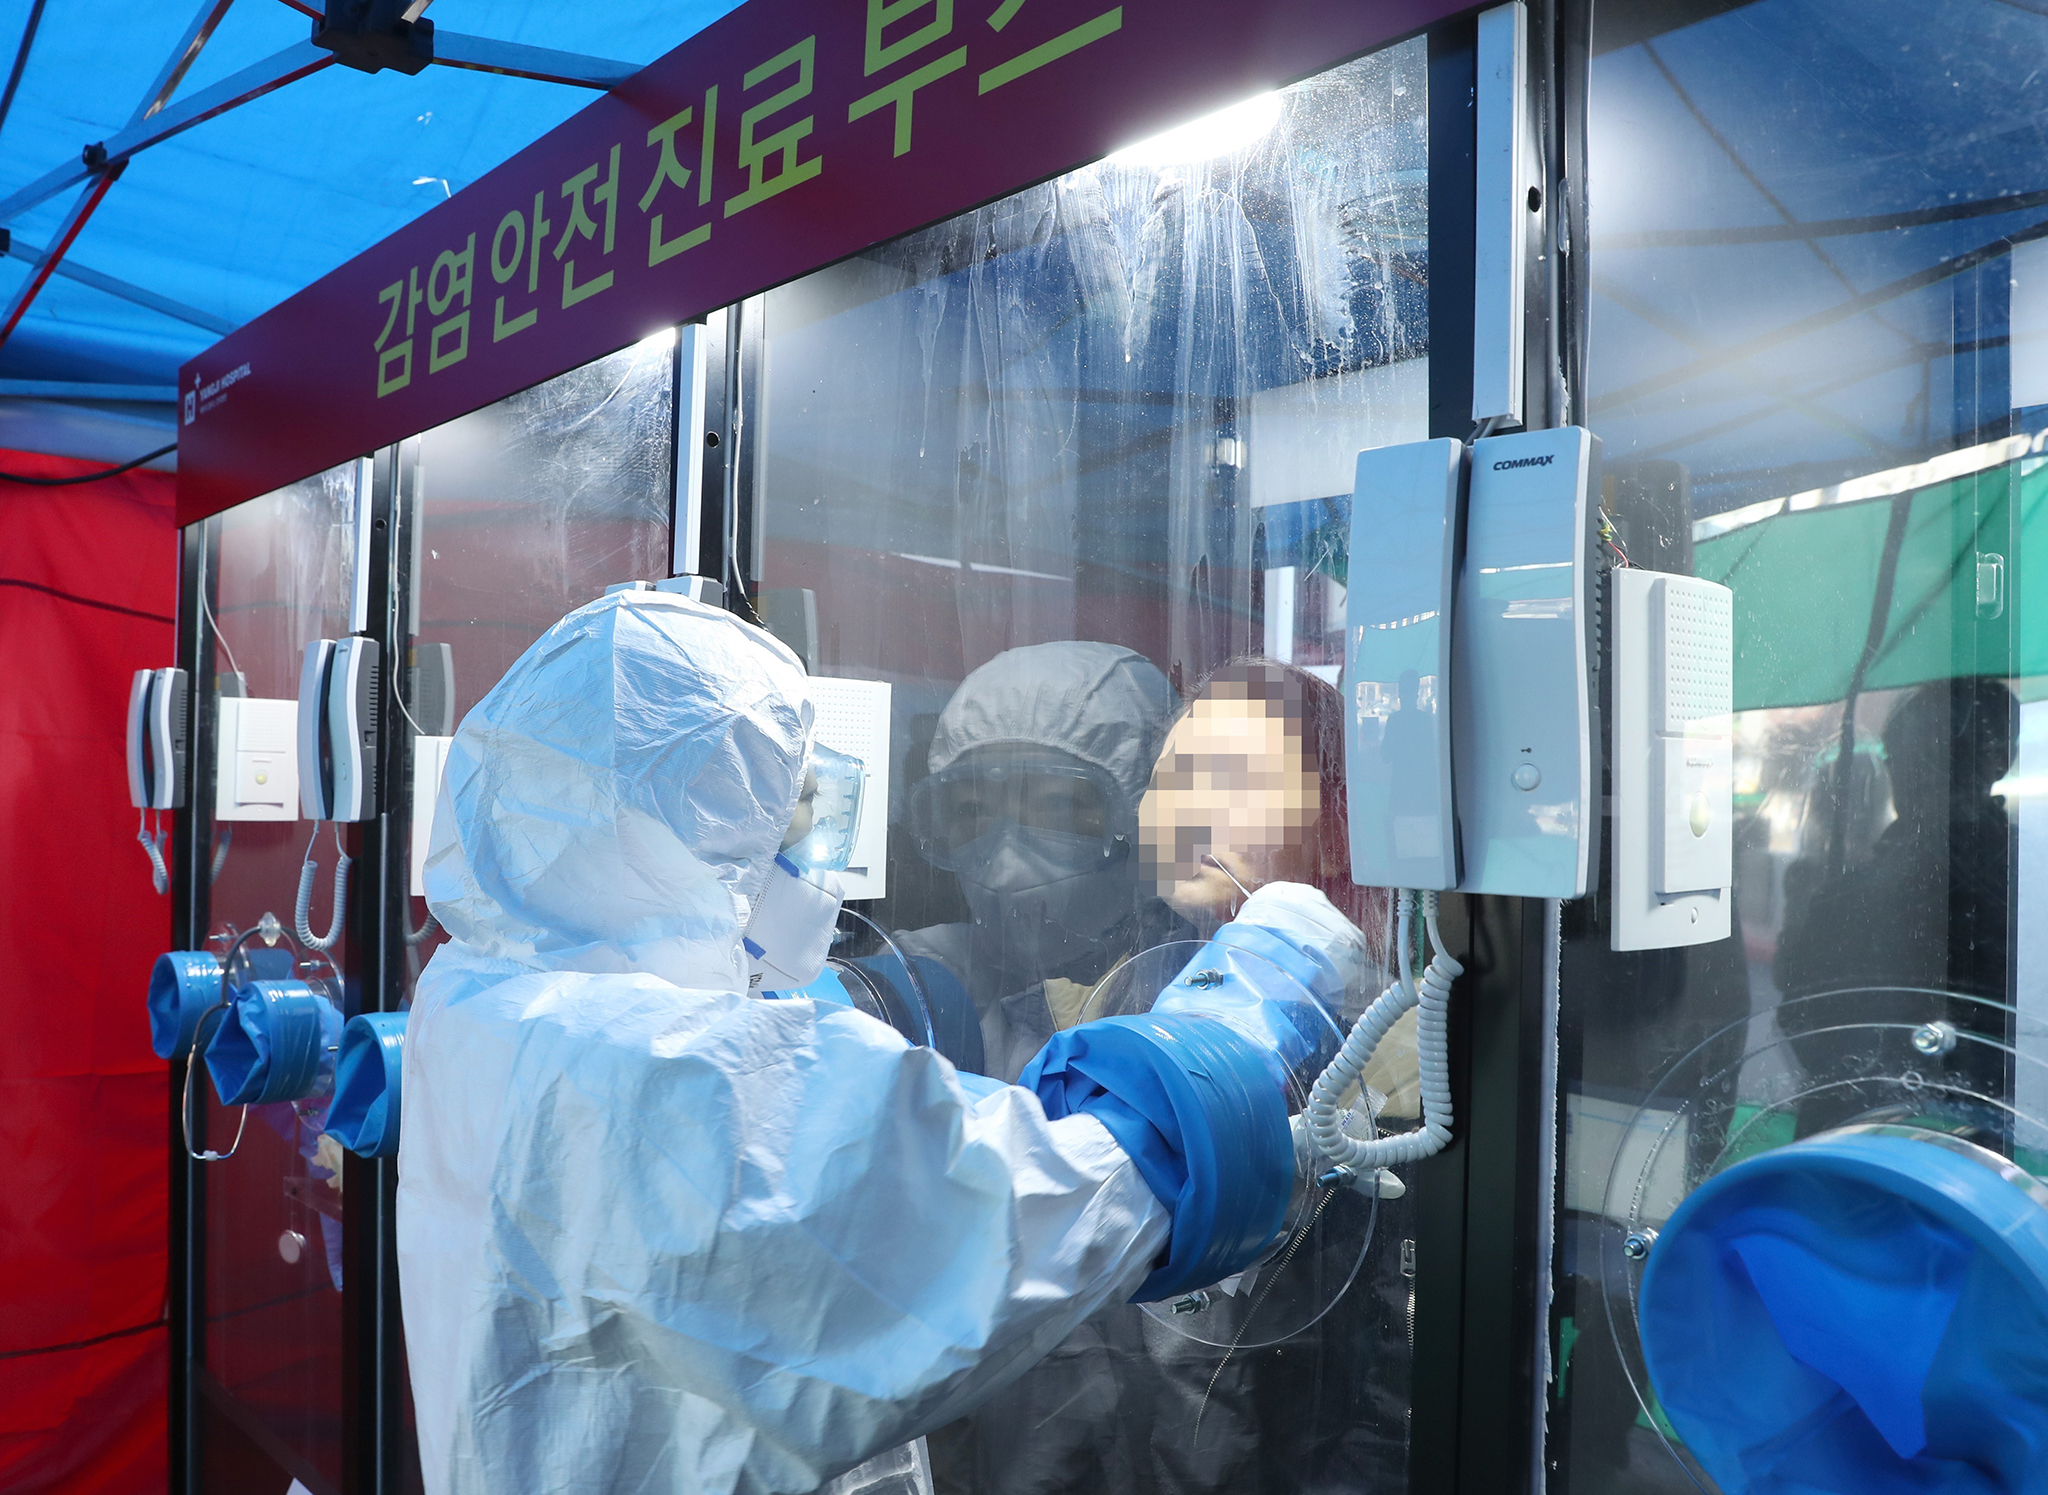 Nhân viên y tế lấy mẫu bệnh phẩm từ bệnh nhân để xét nghiệm COVID-19 tại một bệnh viện ở Seoul, Hàn Quốc ngày 16/3/2020. (Nguồn: Yonhap/TTXVN)